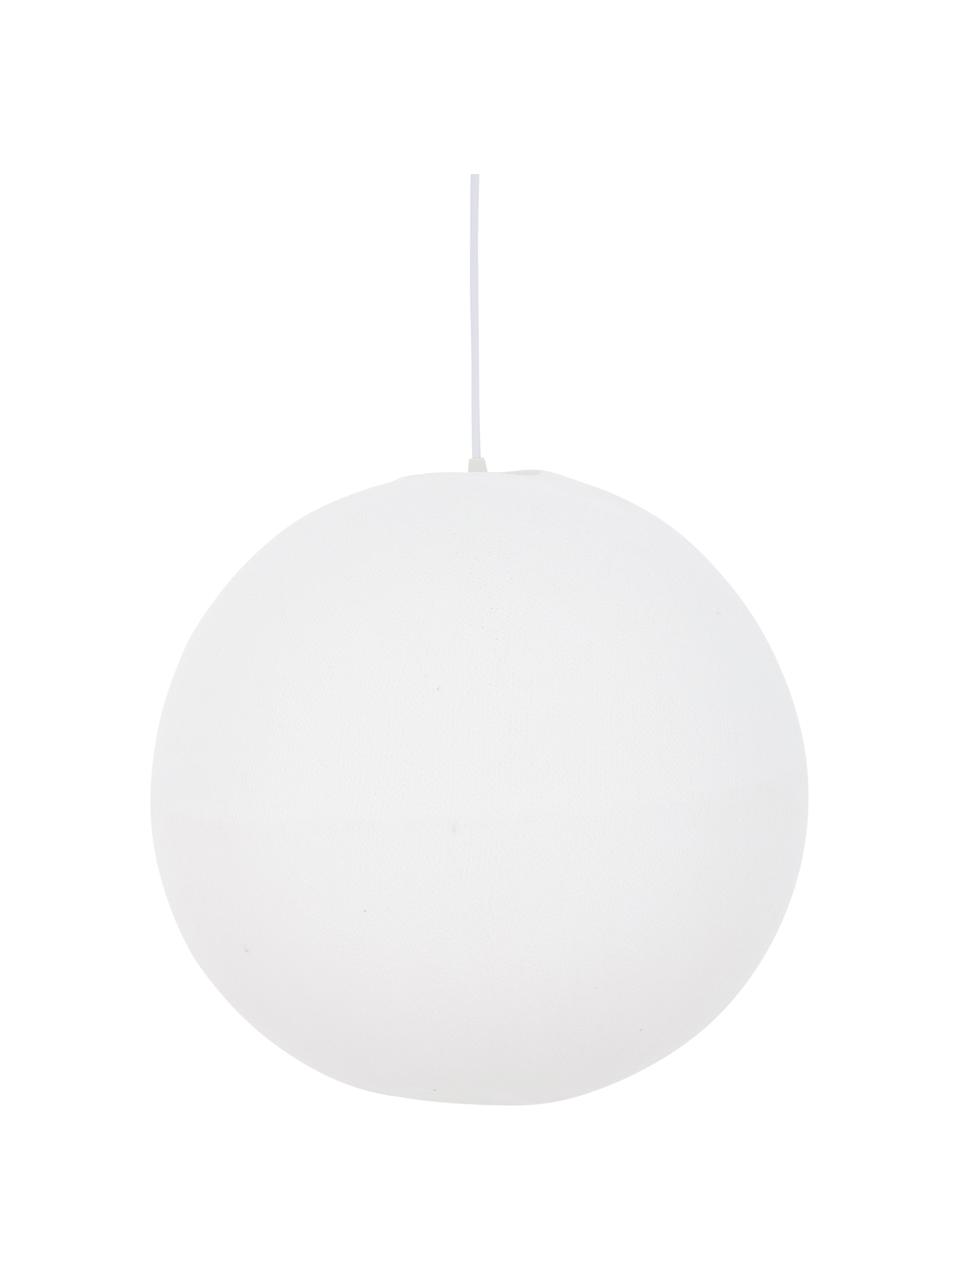 Lámpara de techo Colorain, Pantalla: poliéster, Cable: plástico, Blanco, Ø 41 x Al 135 cm